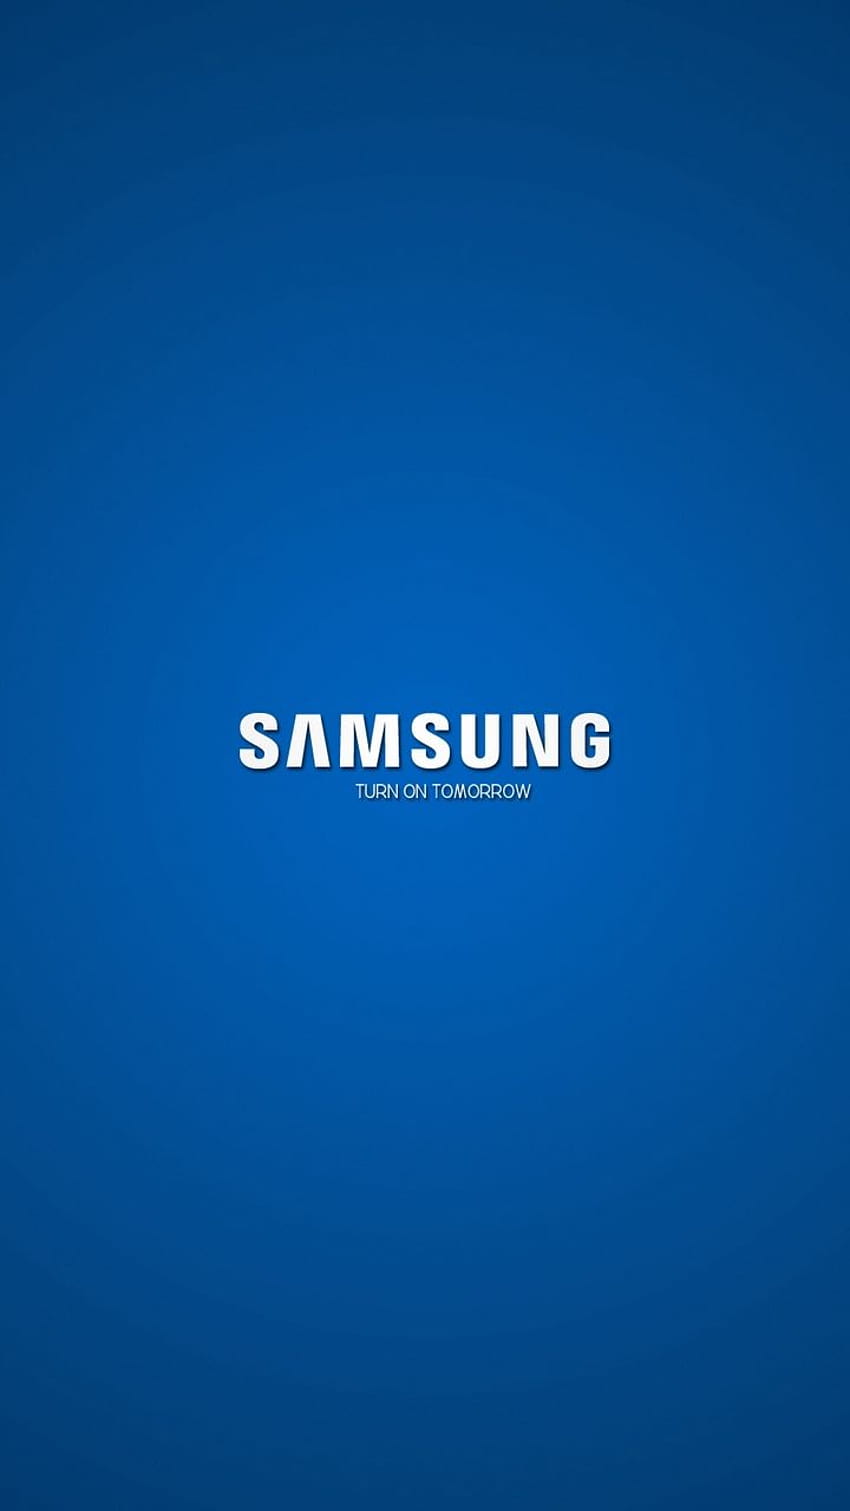 720x1280 samsung, perusahaan, logo, biru, putih, logo android 720x1280 wallpaper ponsel HD